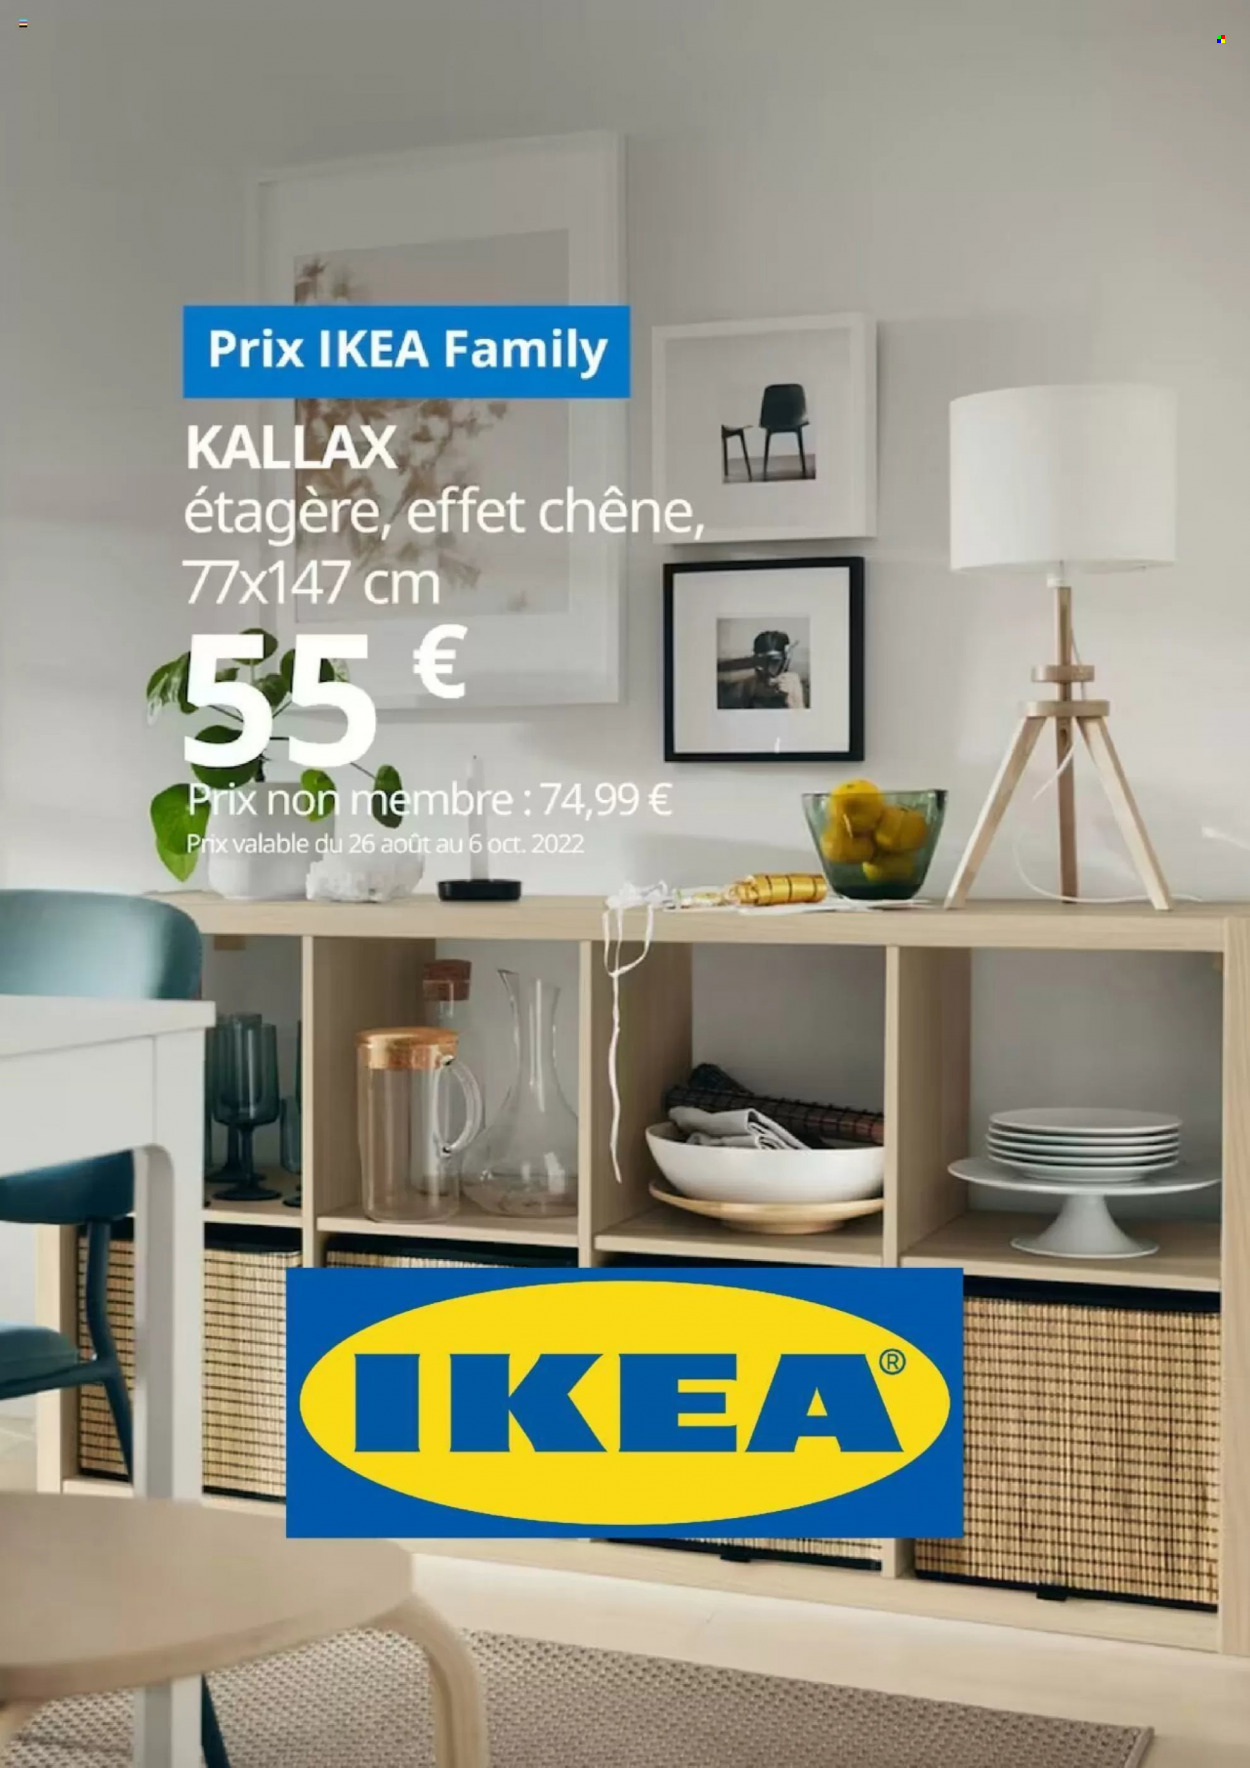 Catalogue IKEA - 26.08.2022 - 06.10.2022. 